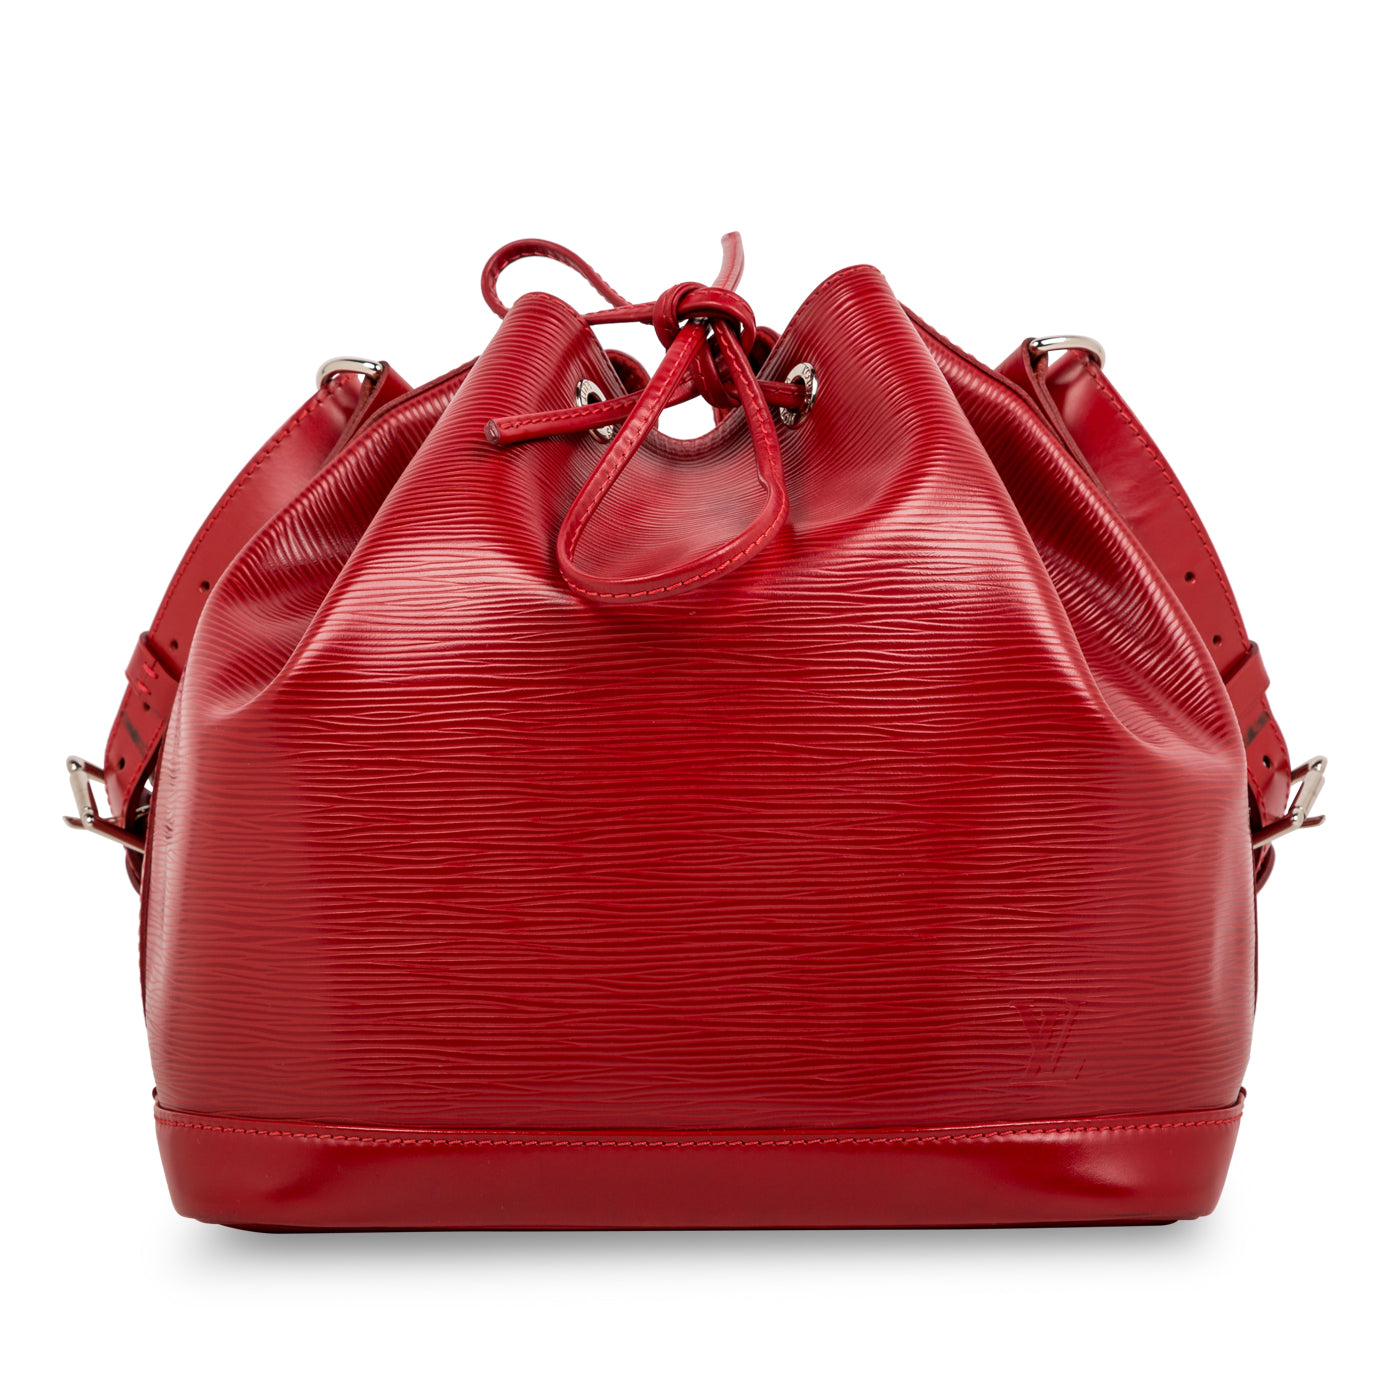 LV Noe Bucket 001-255-00010 - Luxury Pre-Loved Handbags, Lee Ann's Fine  Jewelry